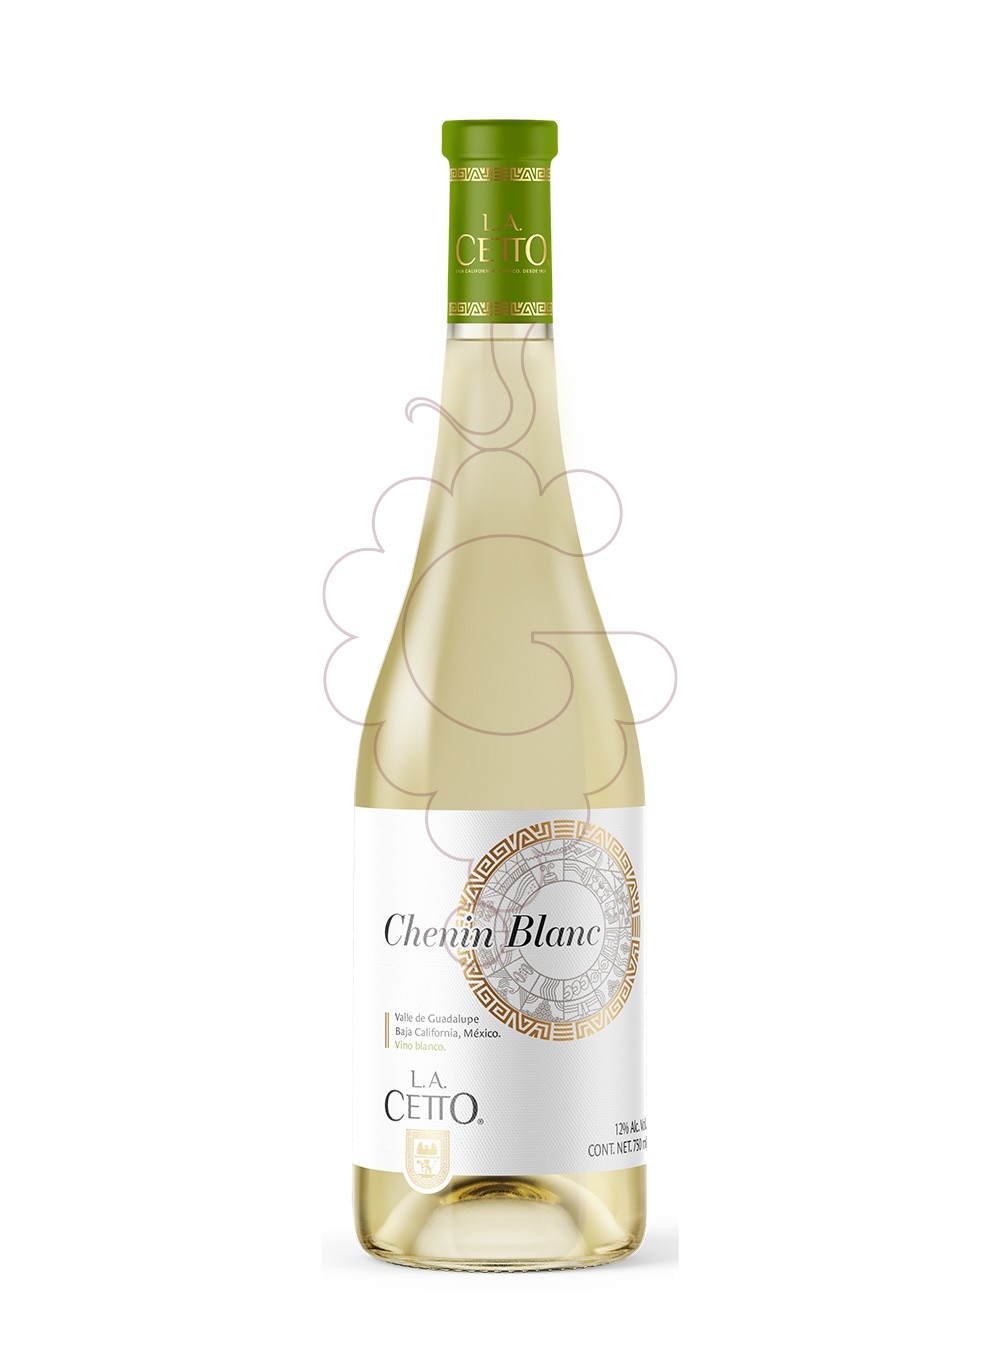 Photo LA Cetto Chenin Blanc white wine